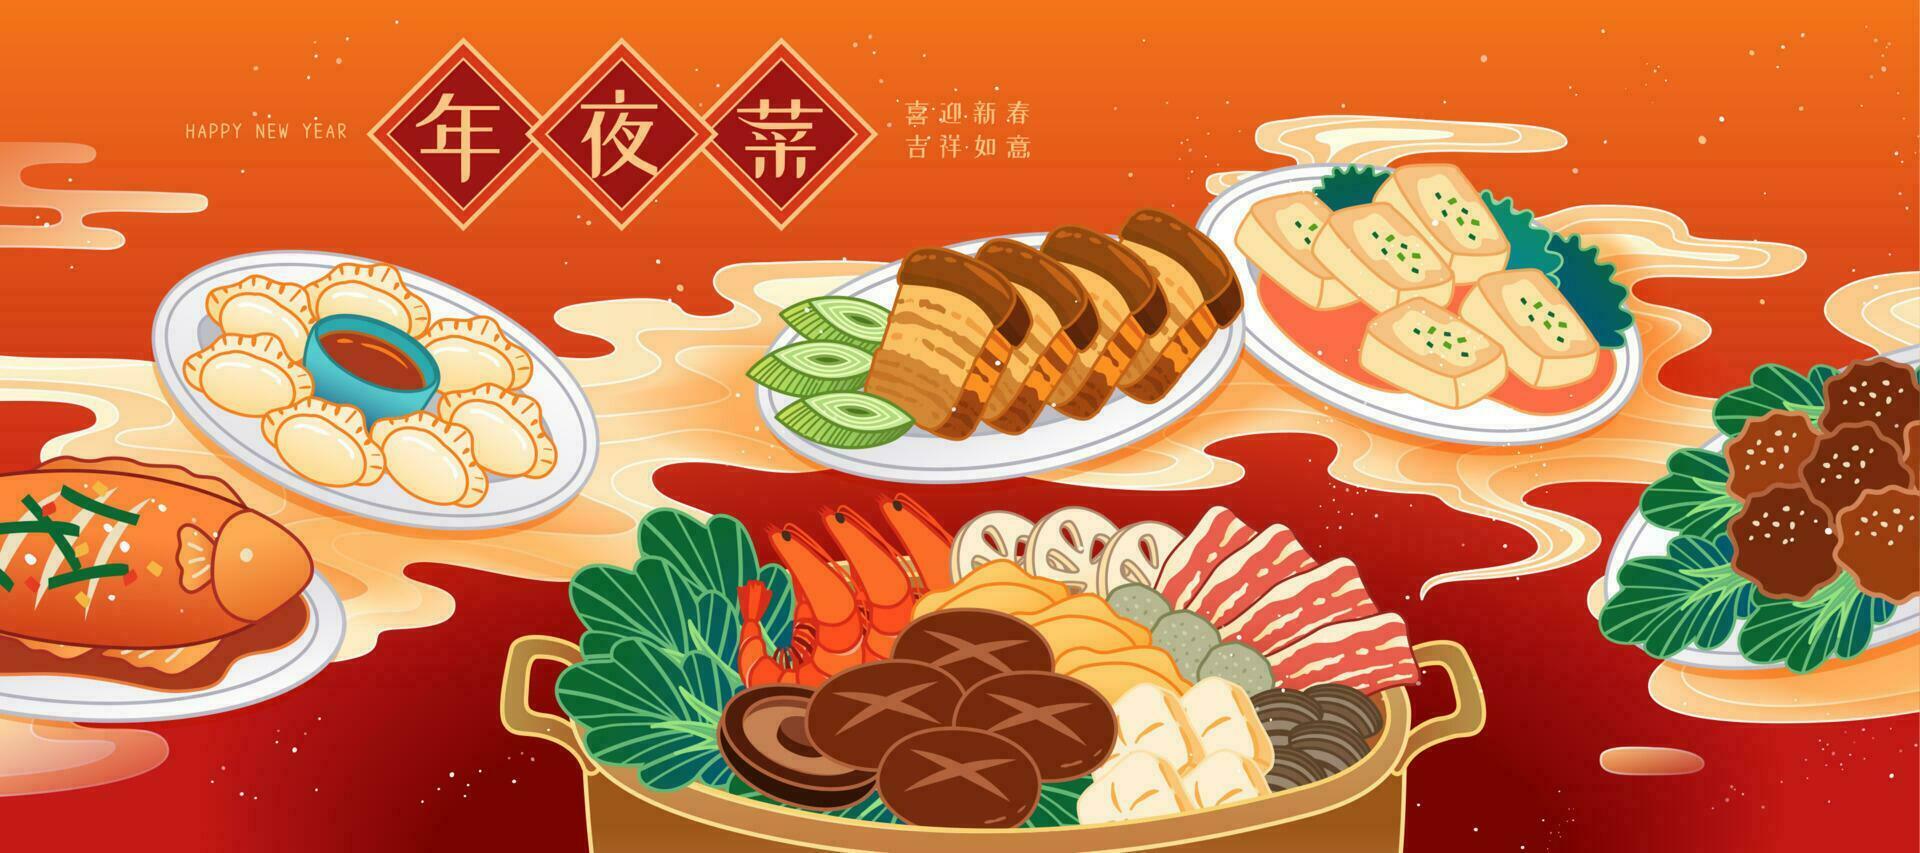 Cinese nuovo anno famiglia riunione cena illustrazione con delizioso piatti, traduzione, riunione cena, contento nuovo anno vettore